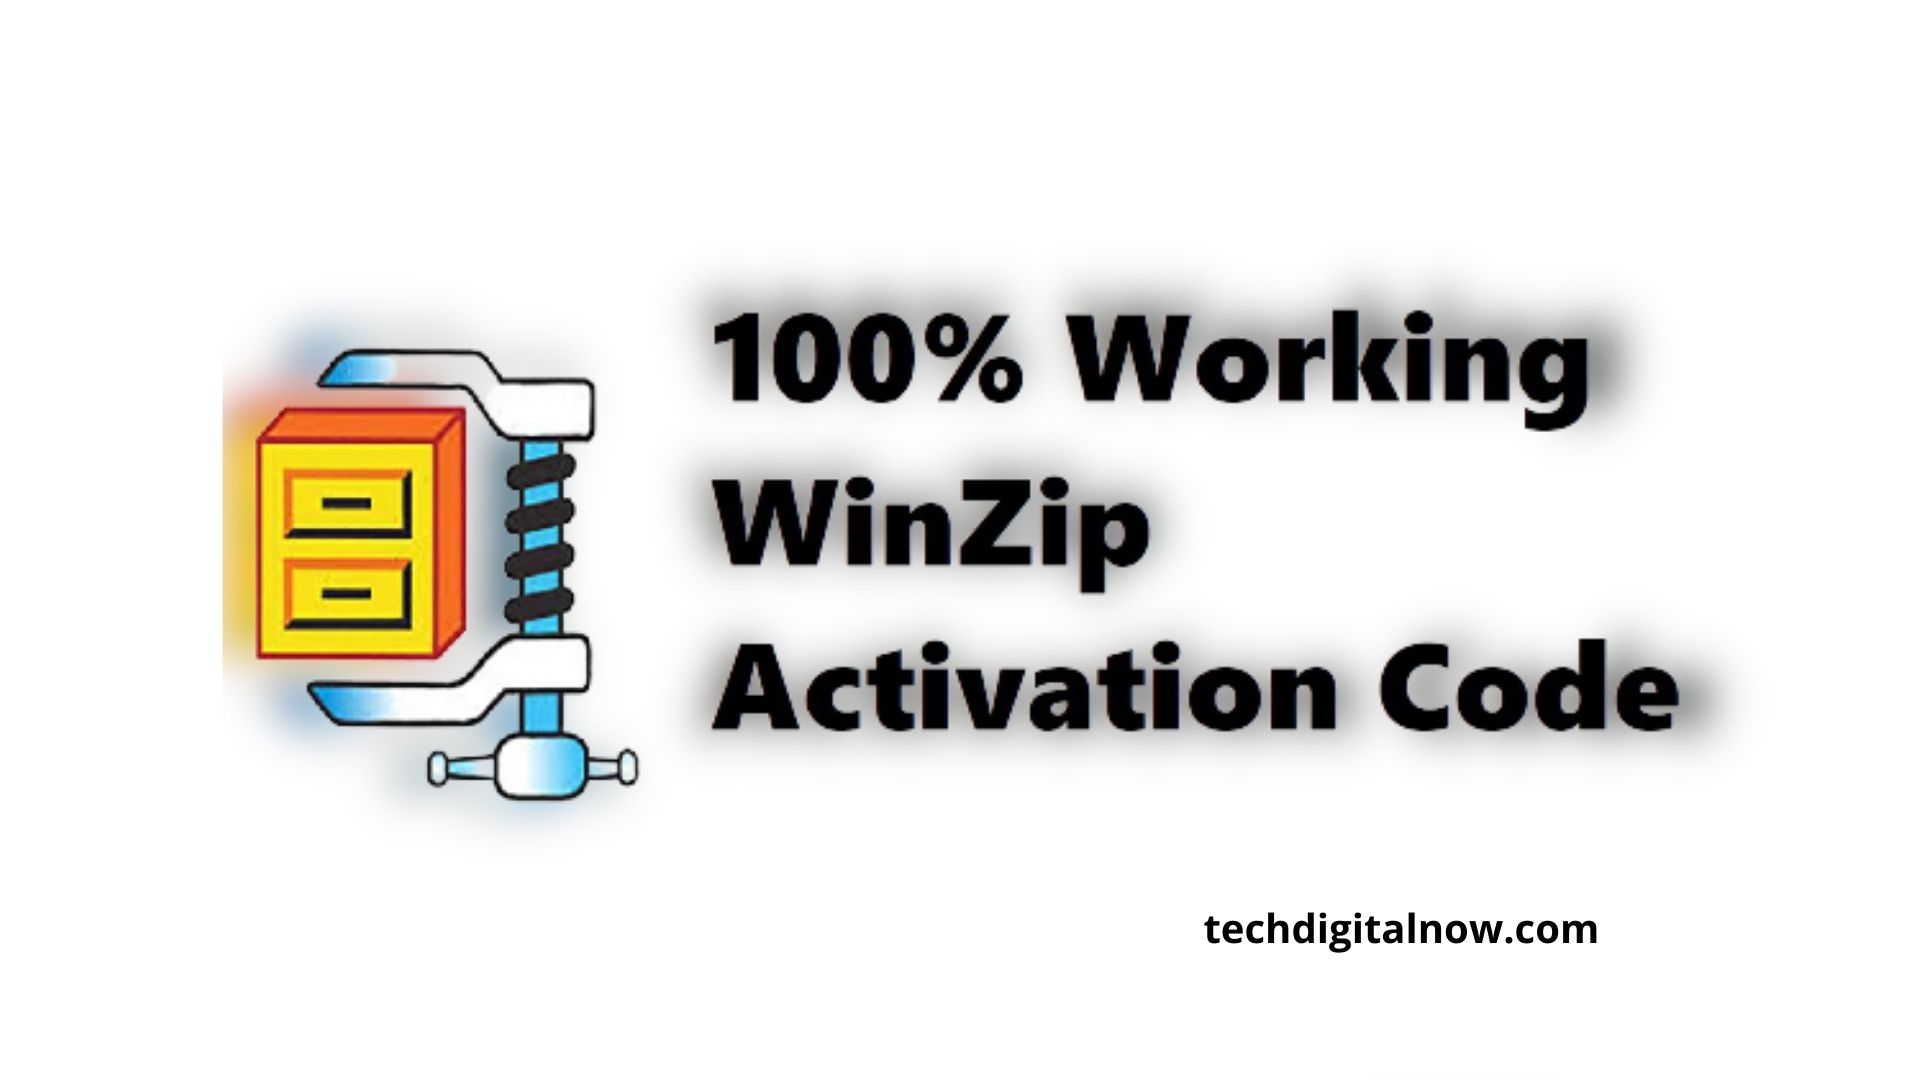 winzip 18.5 activation code free download